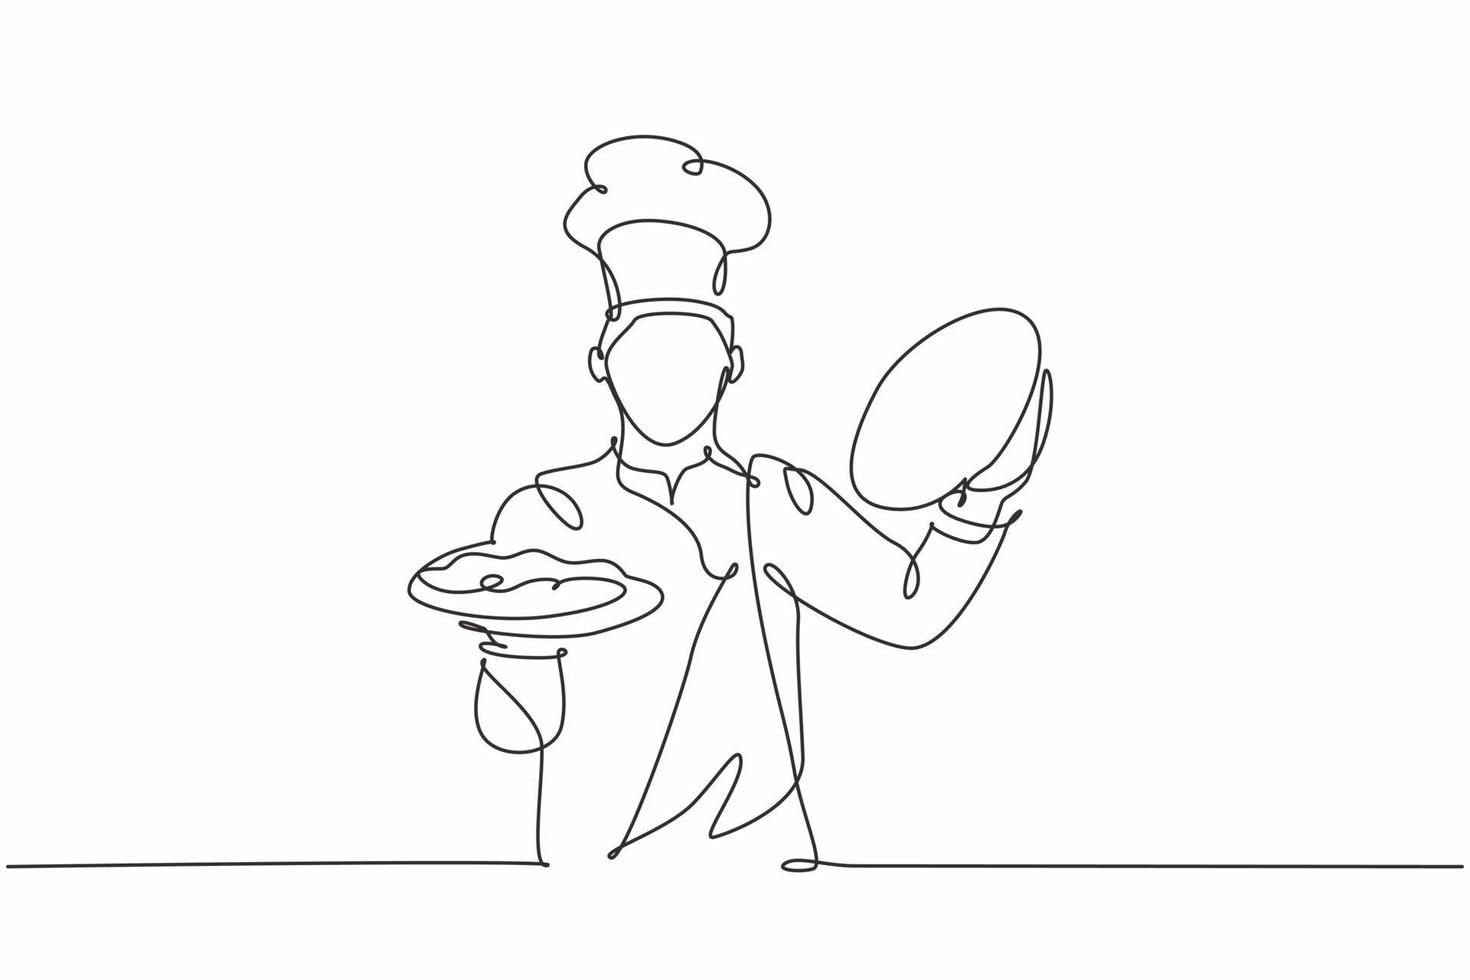 en kontinuerlig radritning av ung stilig manlig kock som öppnar cloche -bricka för att servera huvudrätt till kund på hotellrestaurang. utmärkt service koncept enkel linje rita design vektor illustration